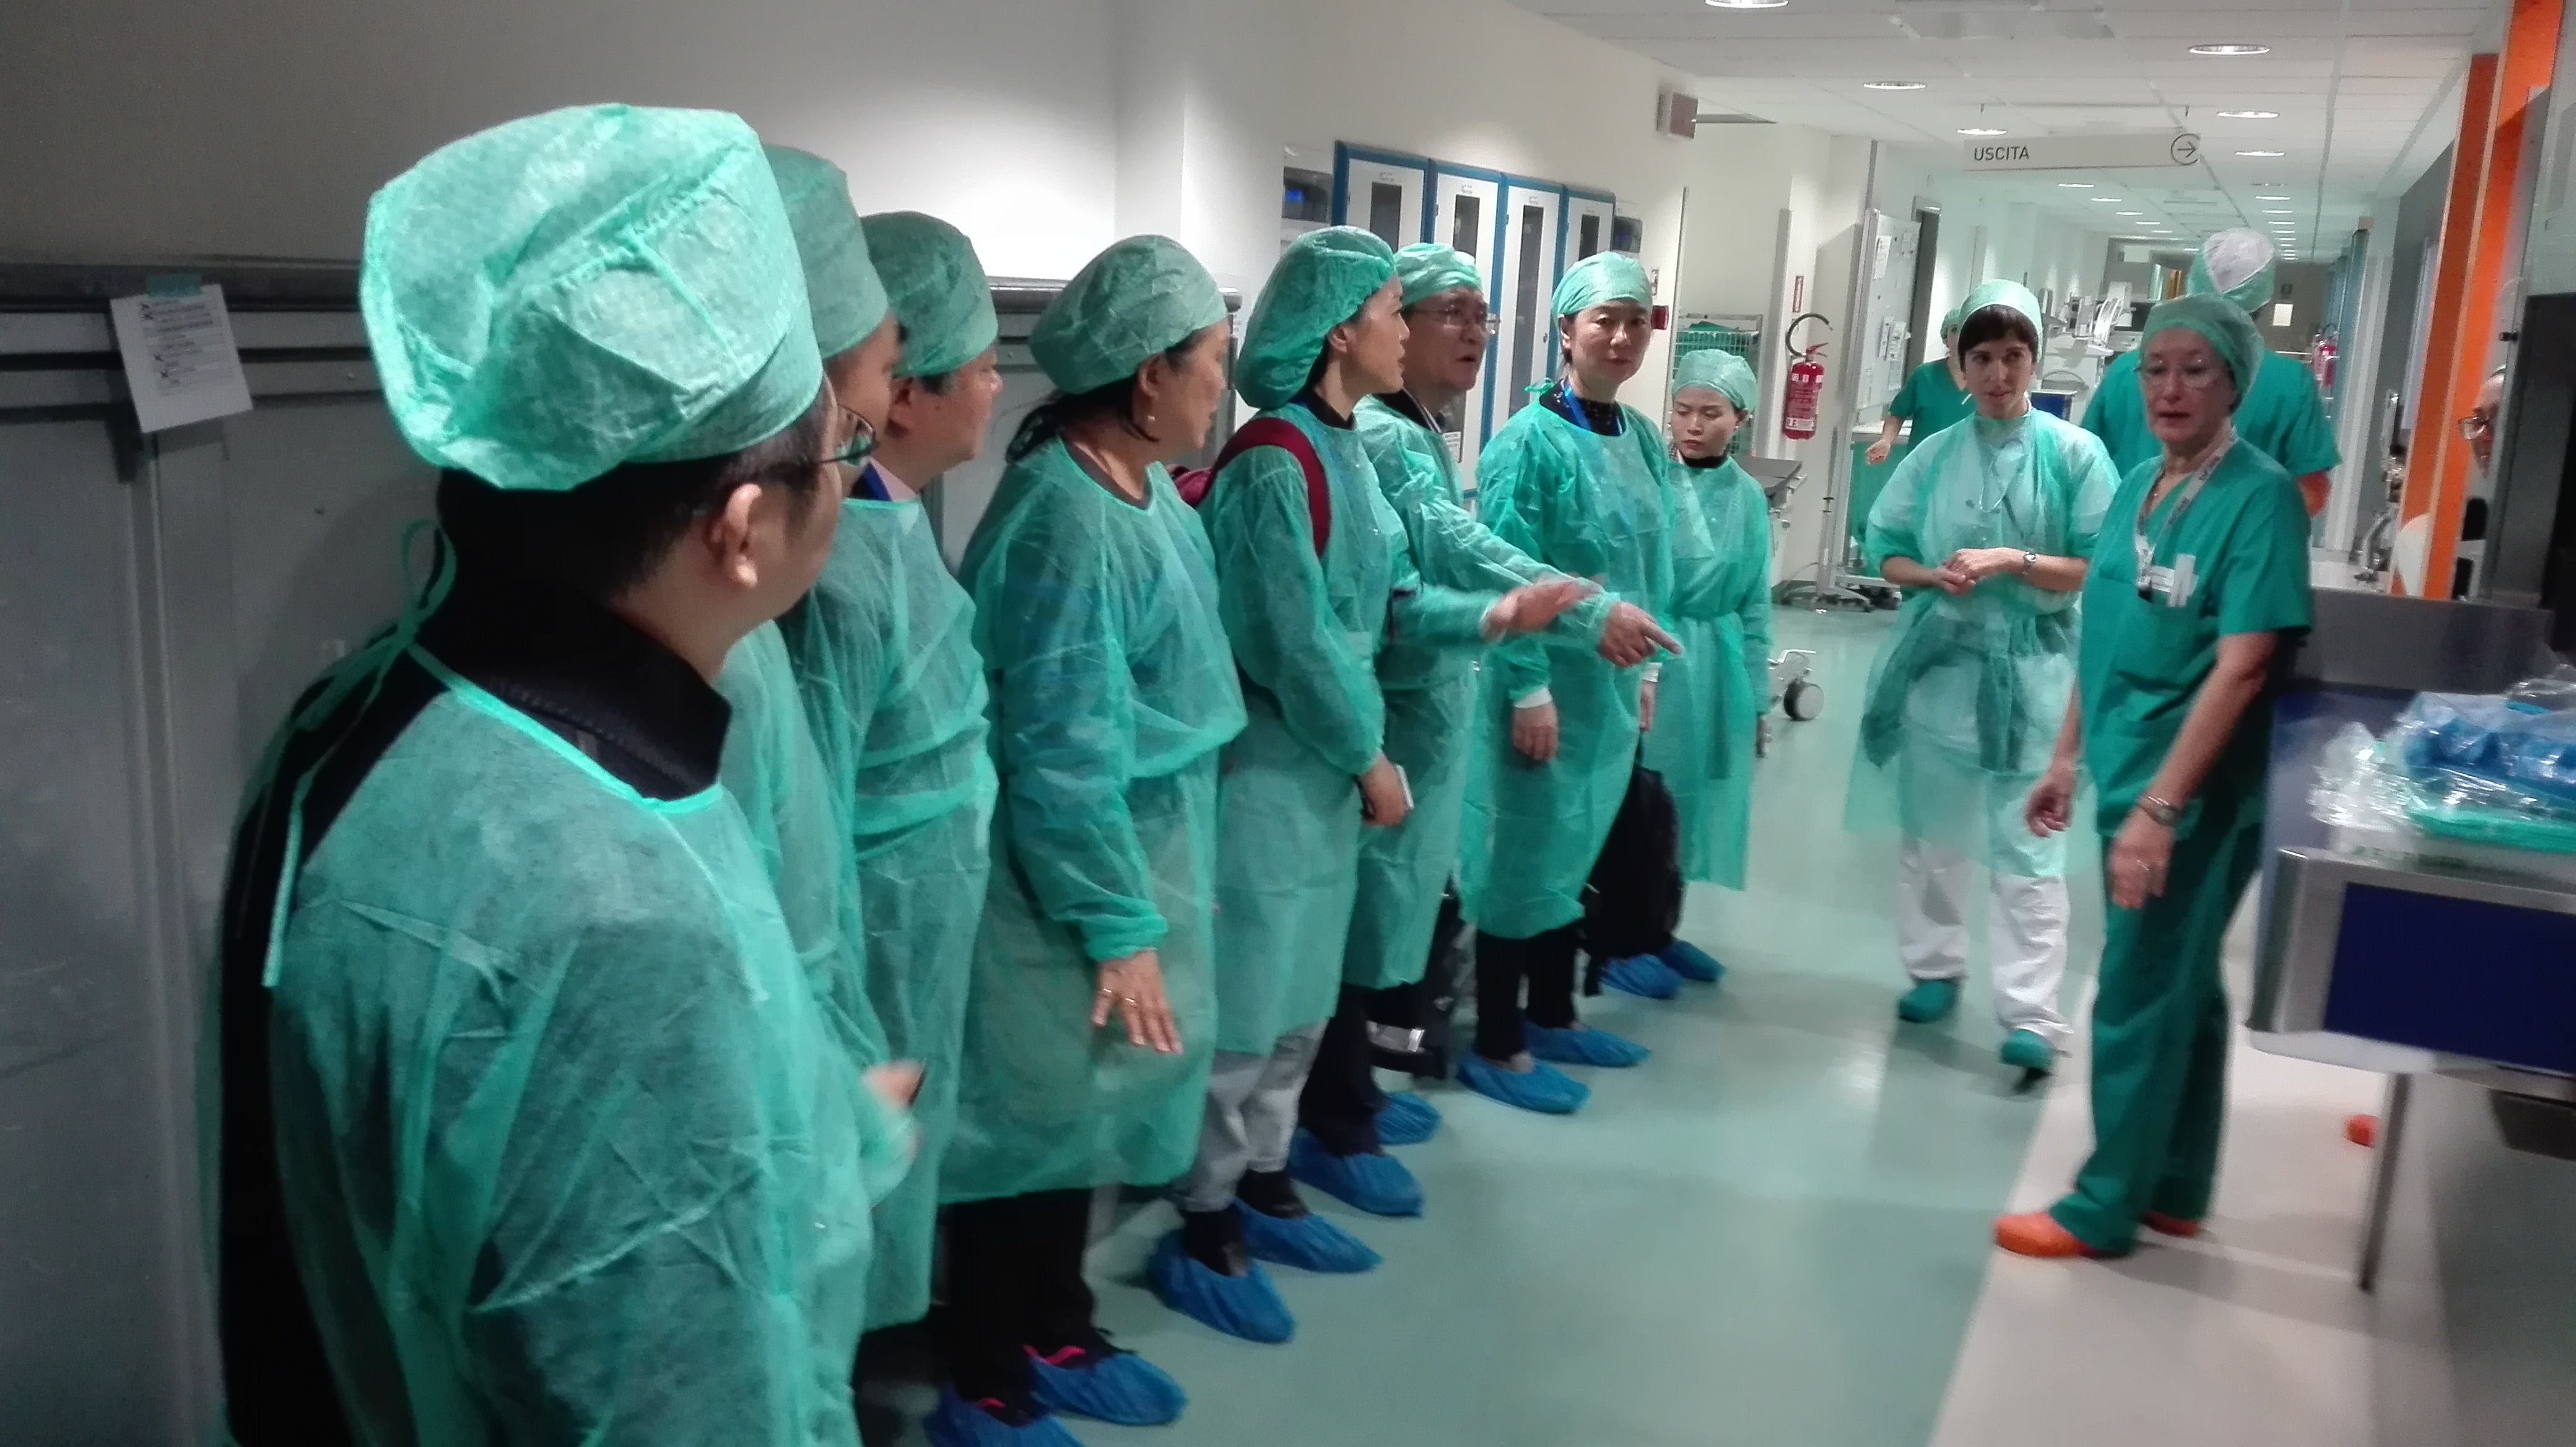 15 primari anestesisti cinesi in visita negli ospedali Santo Stefano di Prato e Santa Maria Nuova Firenze e alla centrale operativa 118 